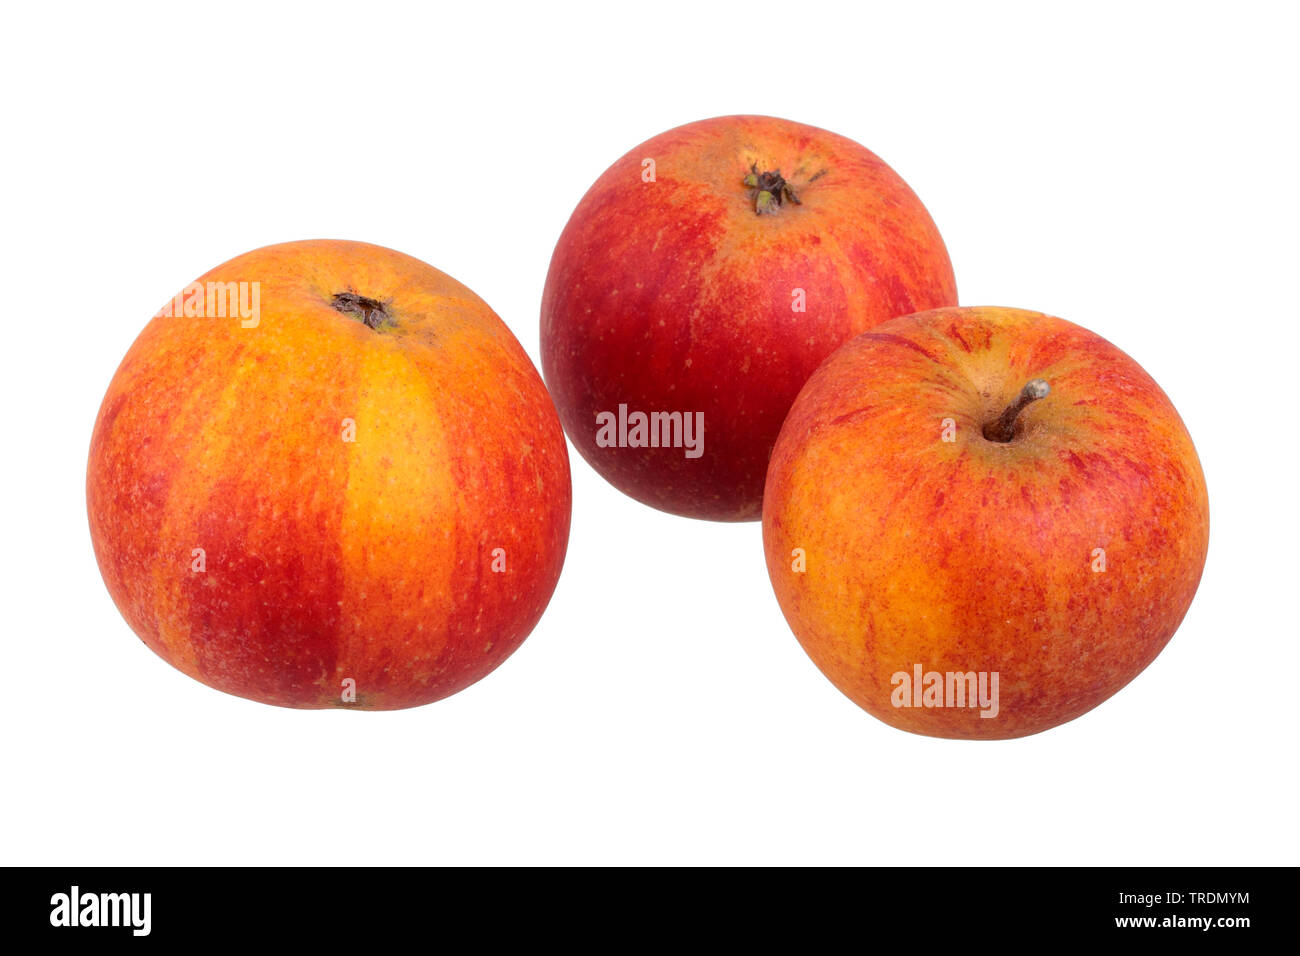 apple (Malus domestica 'Cox Orange Renette', Malus domestica Cox Orange Renette), apples of the cultivar Cox Orange Renette Stock Photo